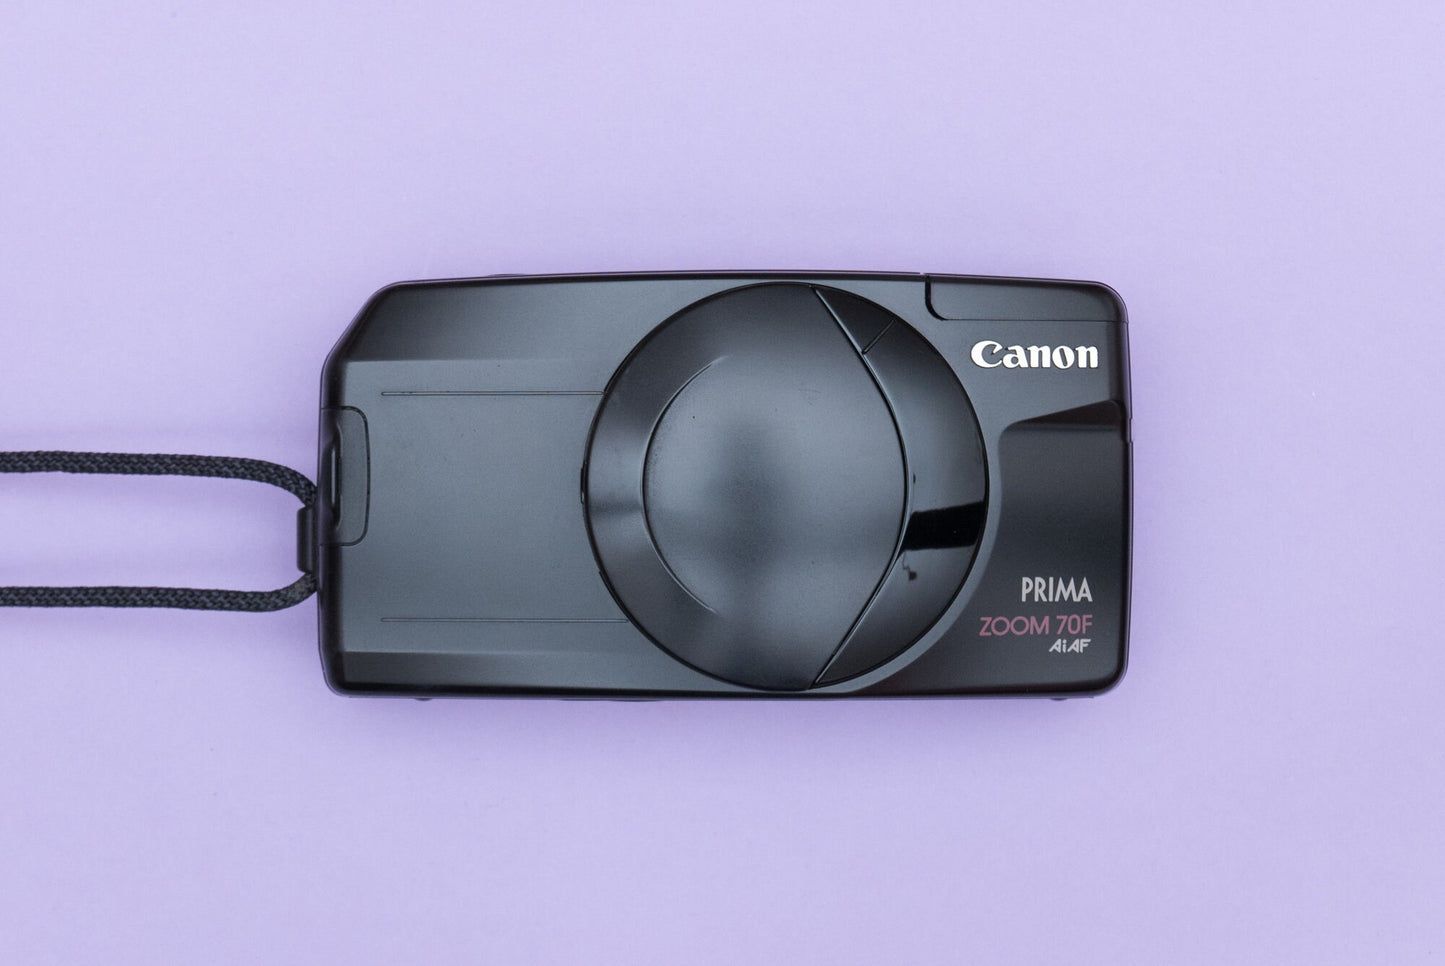 Canon Prima Zoom 70F Compact 35mm Film Camera